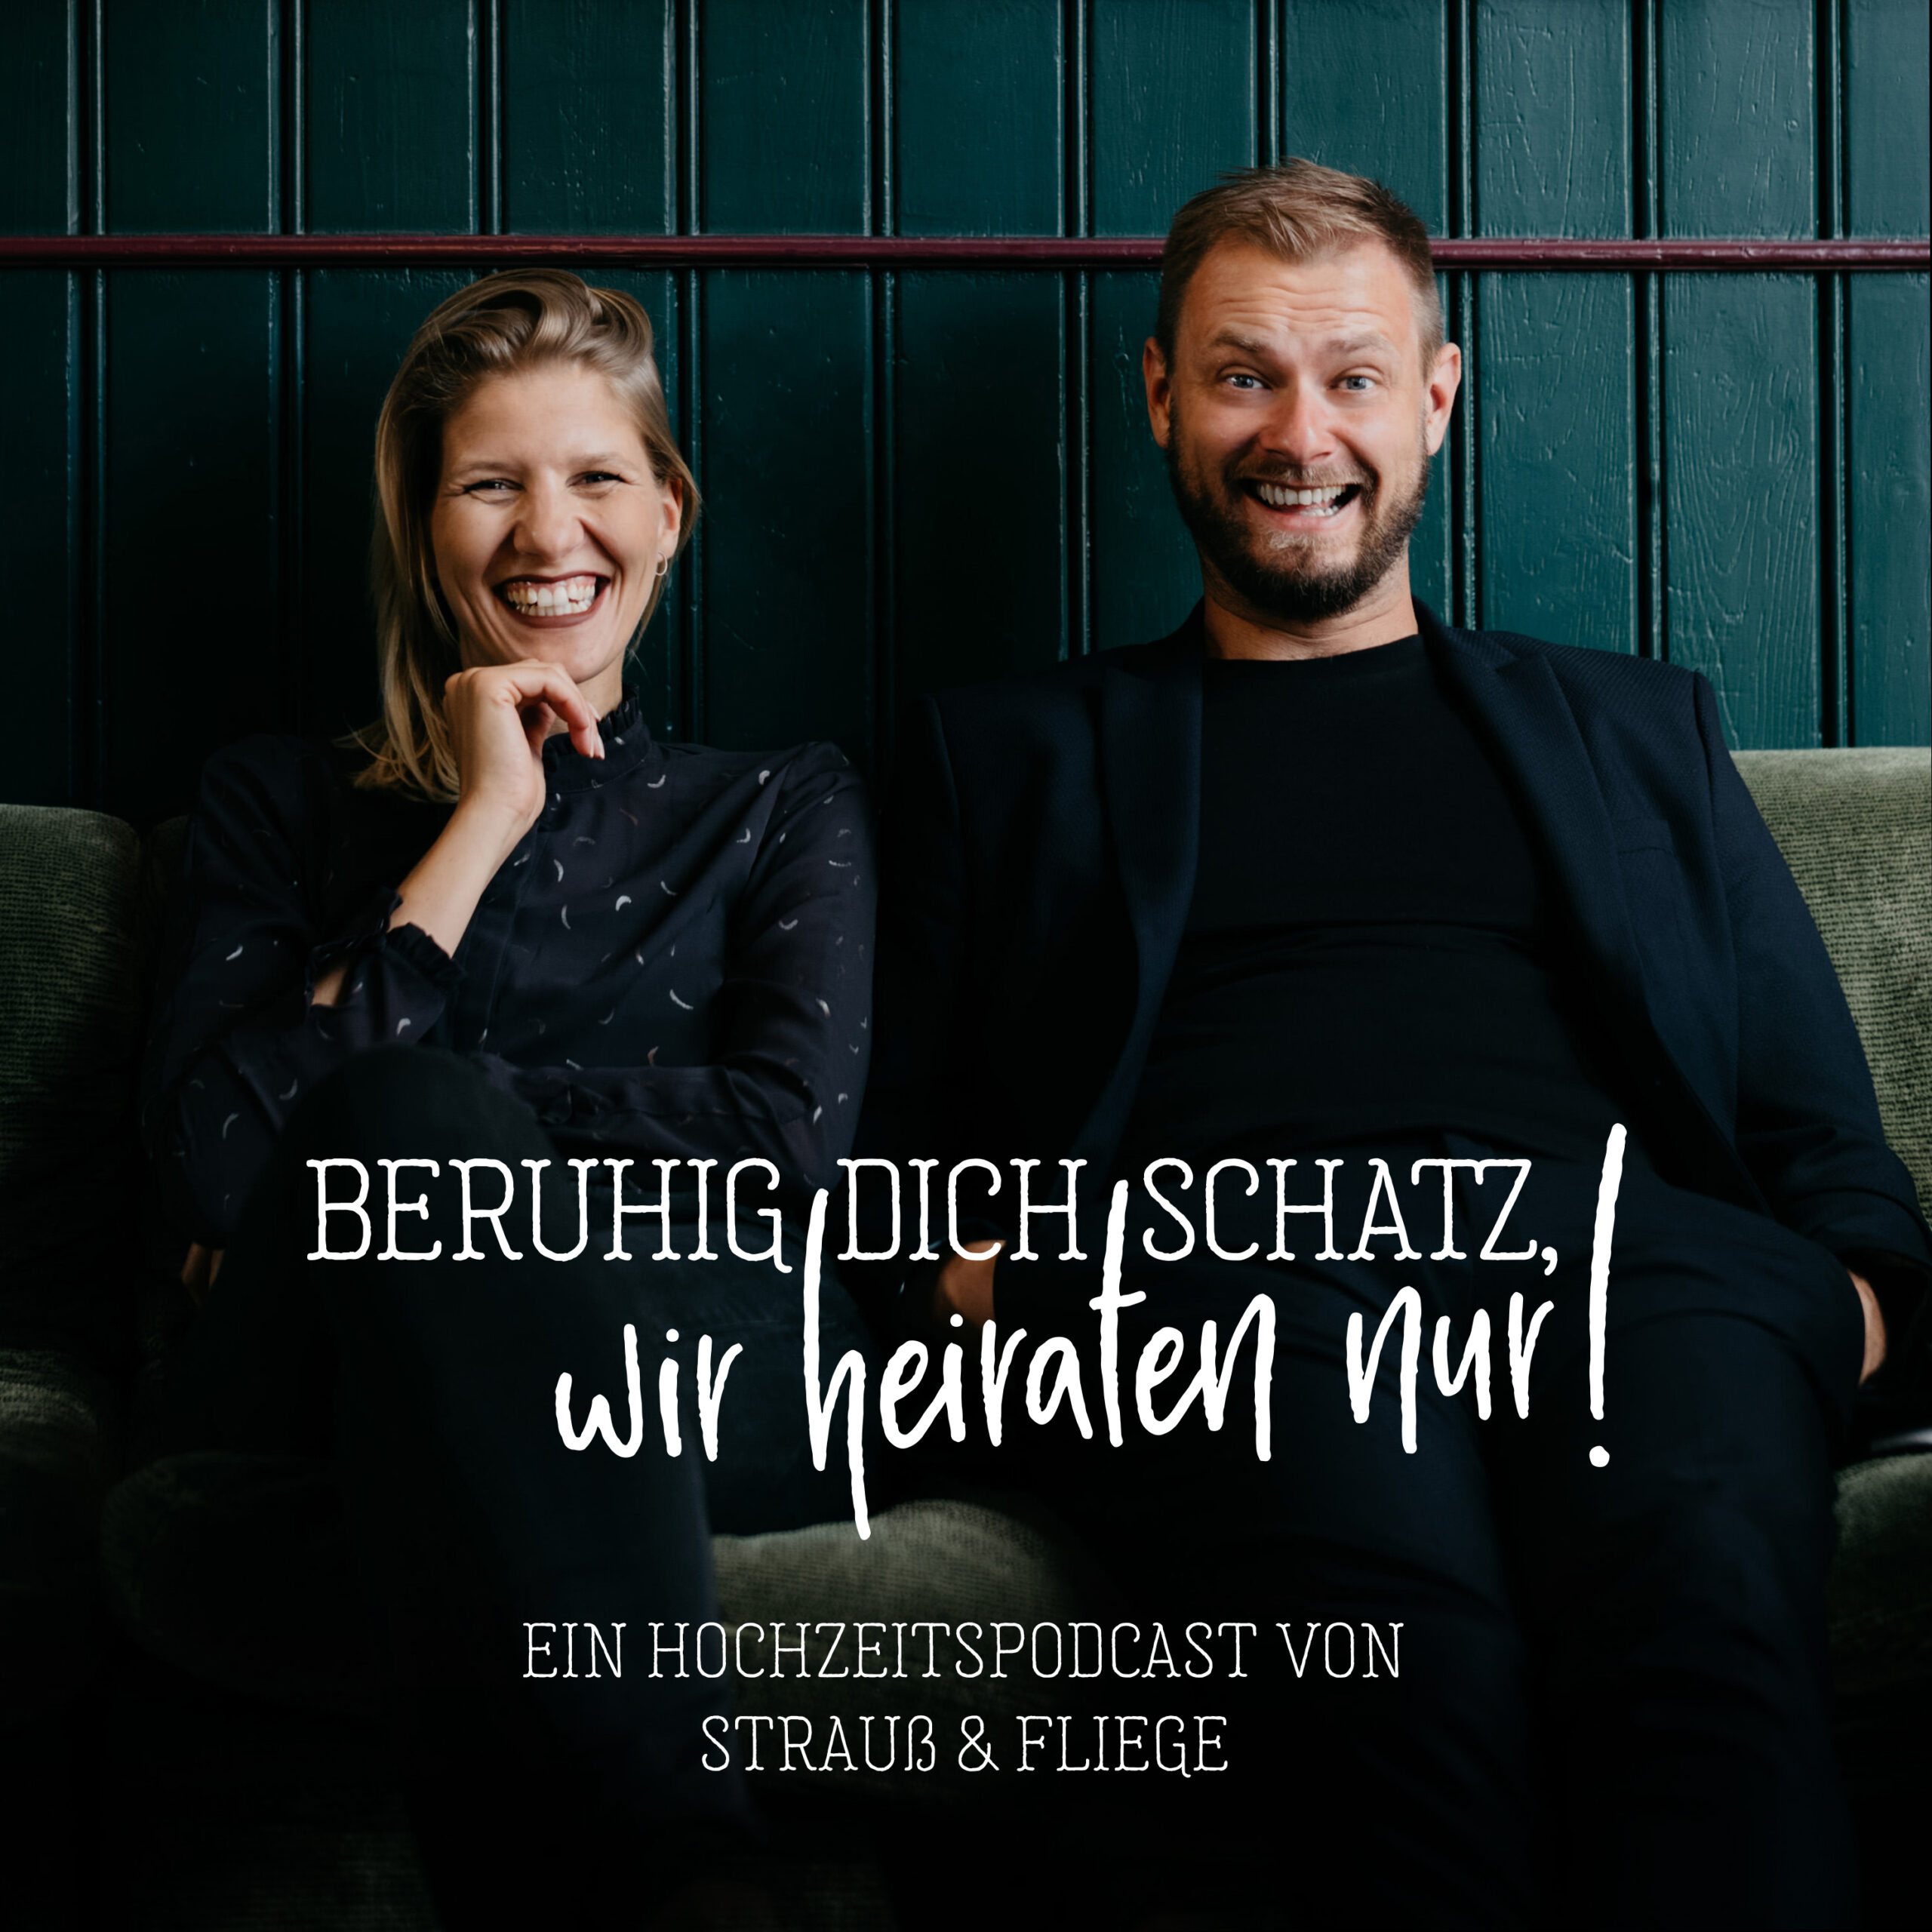 Der Podcast zur freien Trauung "Beruhig Dich Schatz, wir heiraten nur!" von Strauß & Fliege